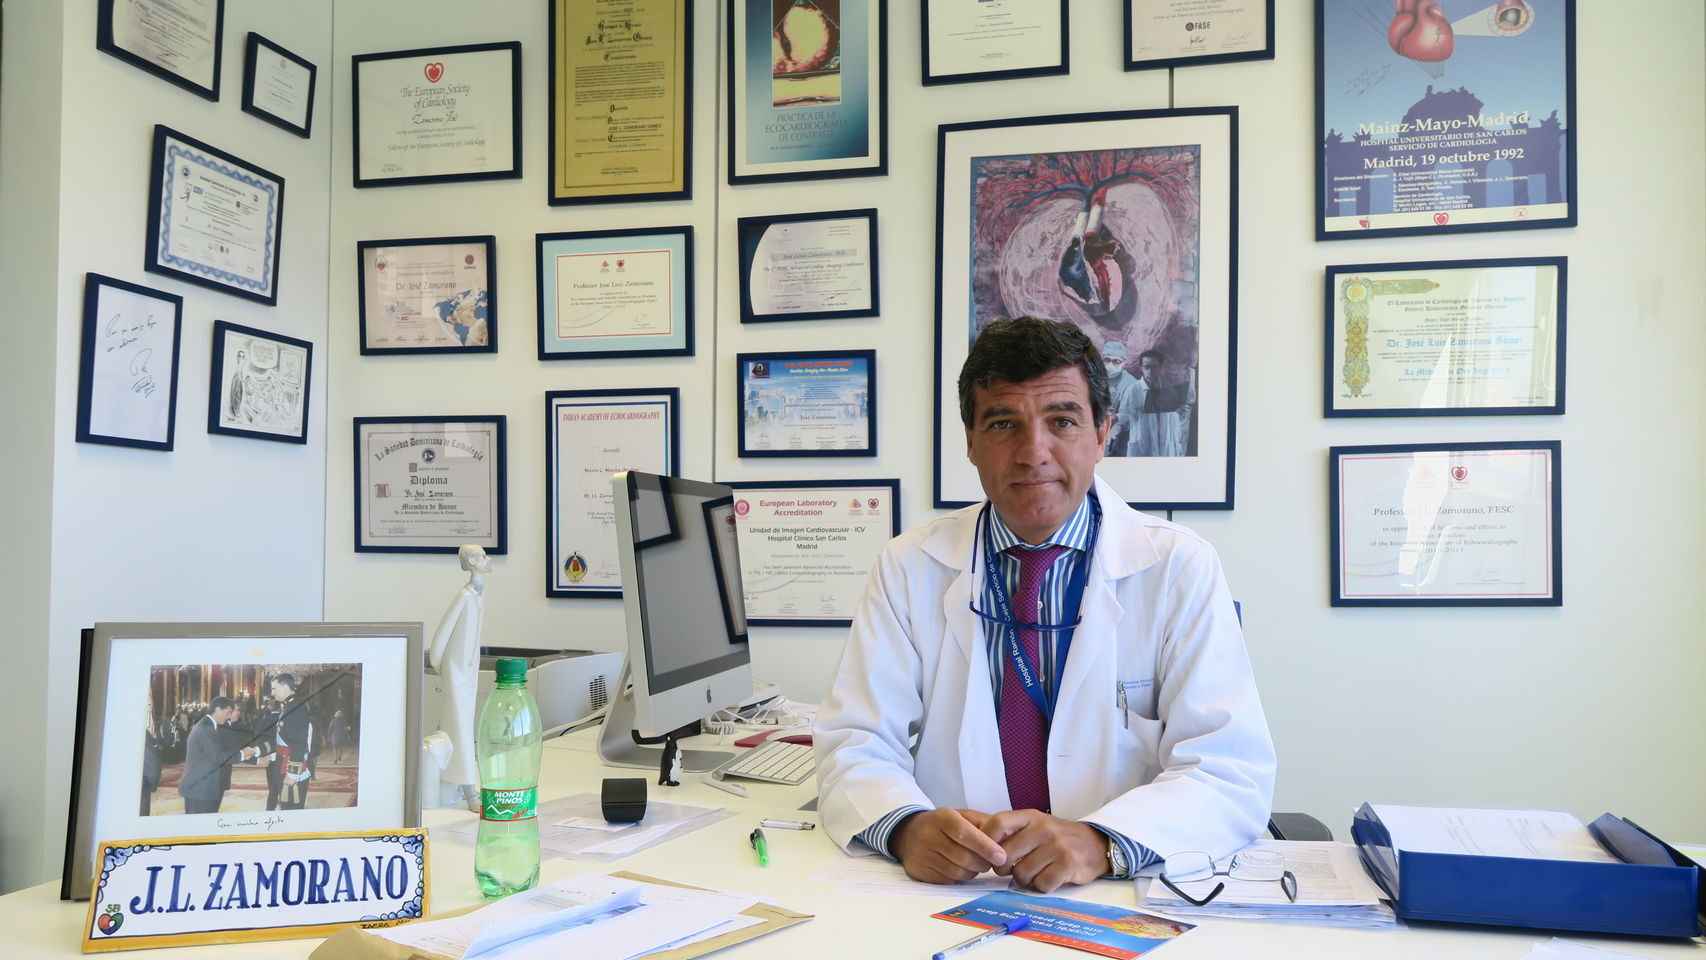 El doctor José Luis Zamorano, en una imagen en su consulta profesional.